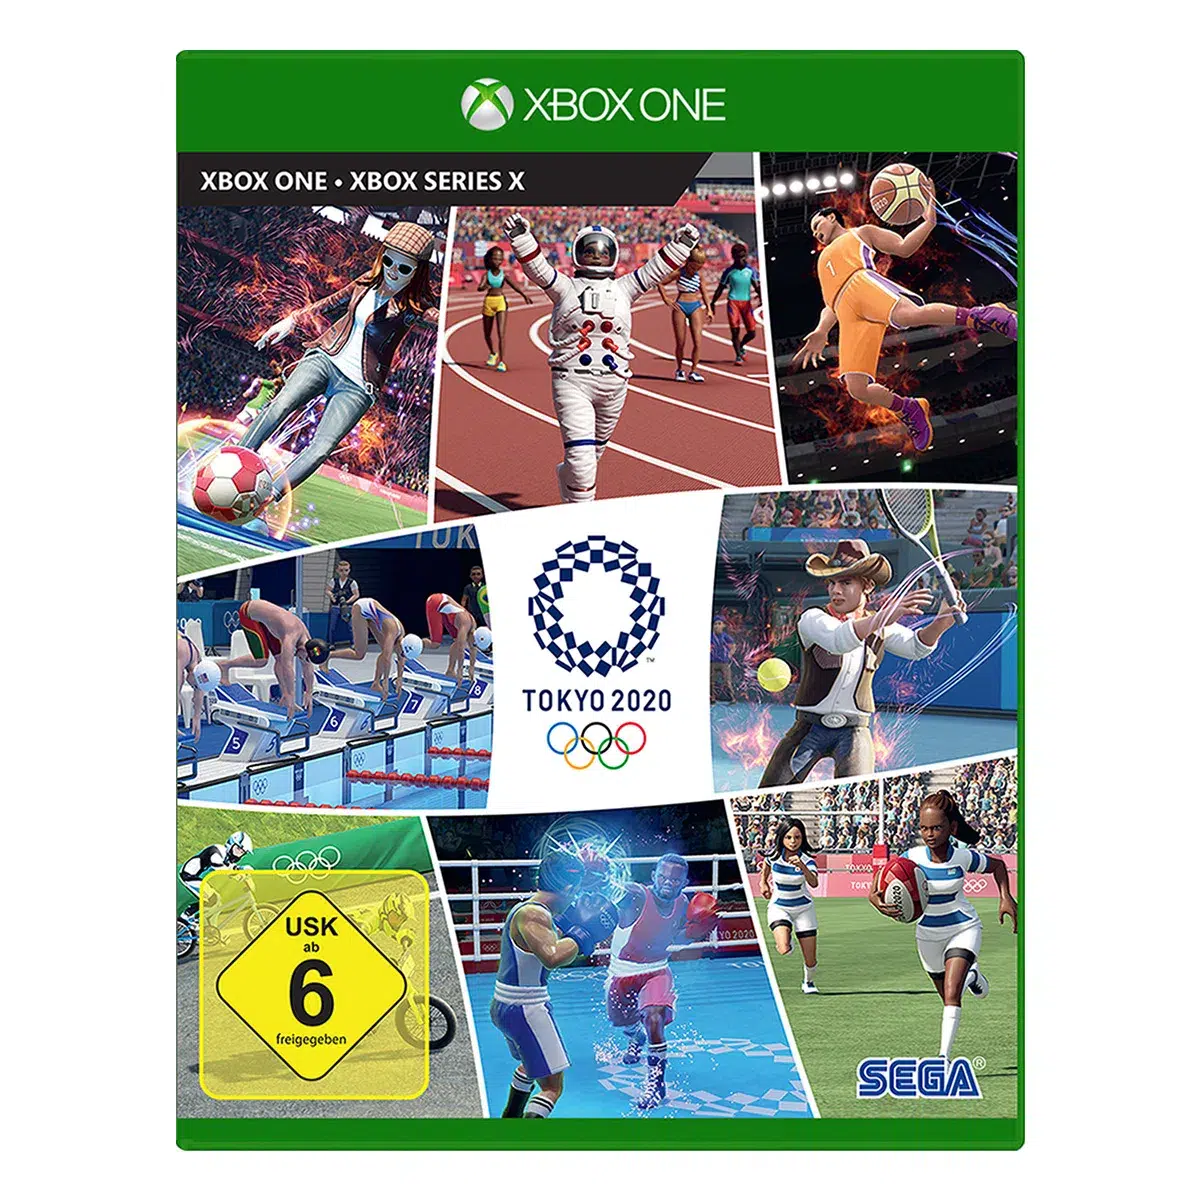 Olympische Spiele Tokyo 2020 - Das offizielle Videospiel - XONE